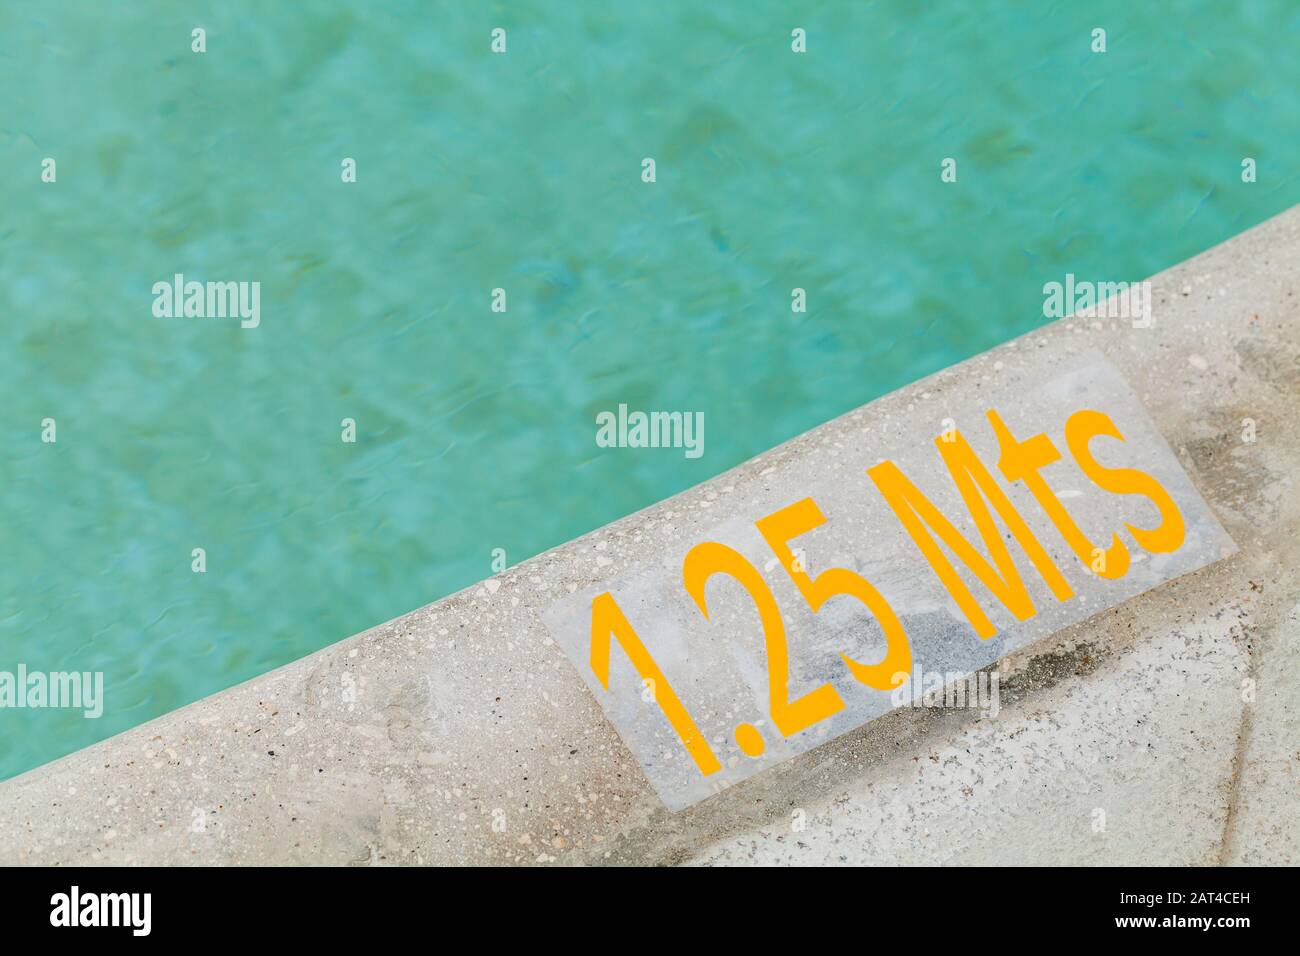 1,25 mètre de profondeur, texte d'avertissement jaune sur un bord de piscine Banque D'Images